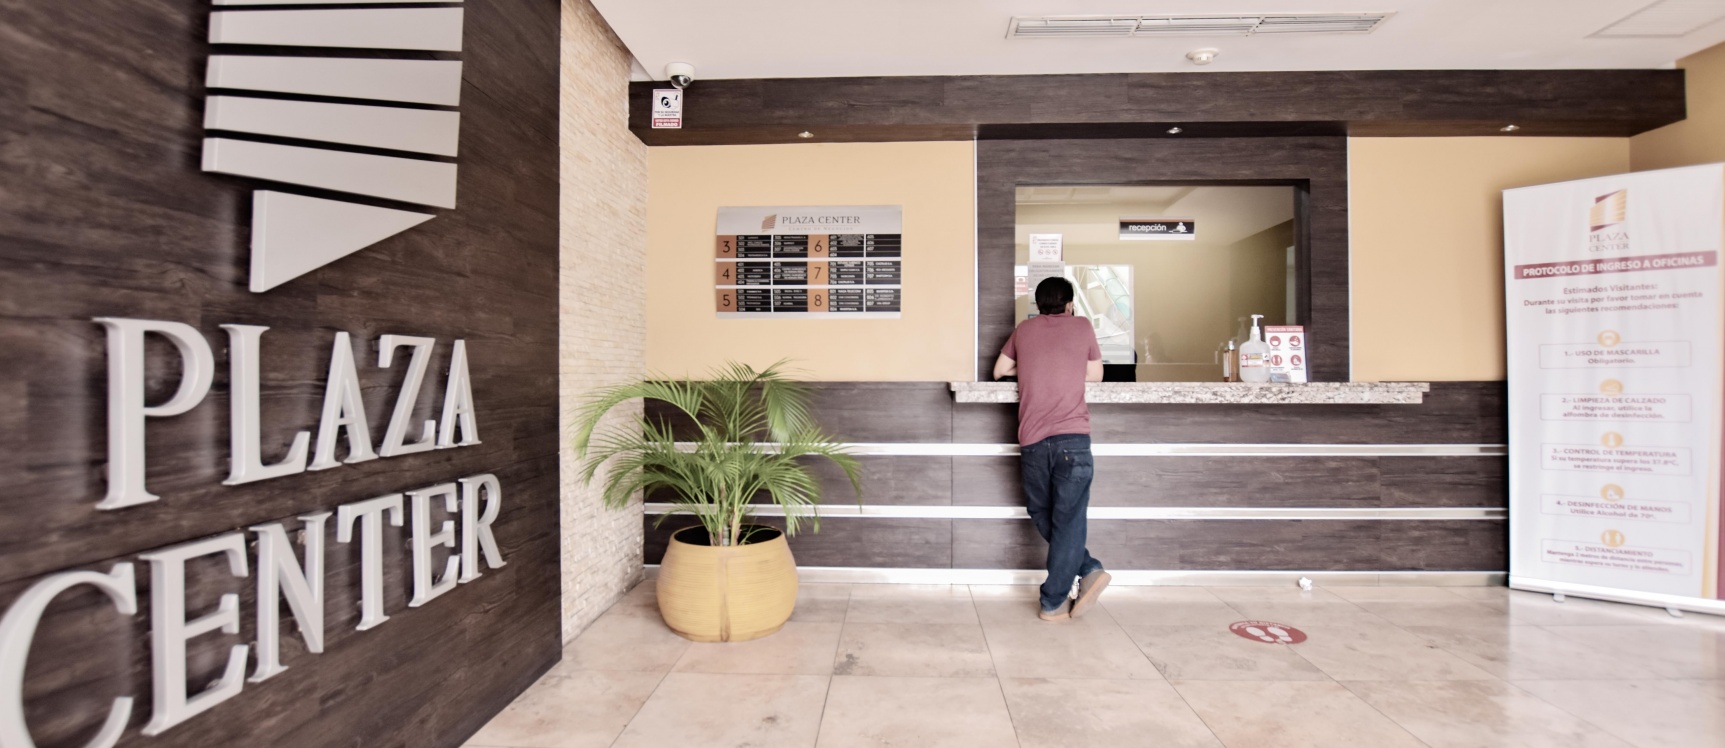 GeoBienes - Oficina en venta ubicada en Plaza Center, Kennedy Norte - Plusvalia Guayaquil Casas de venta y alquiler Inmobiliaria Ecuador